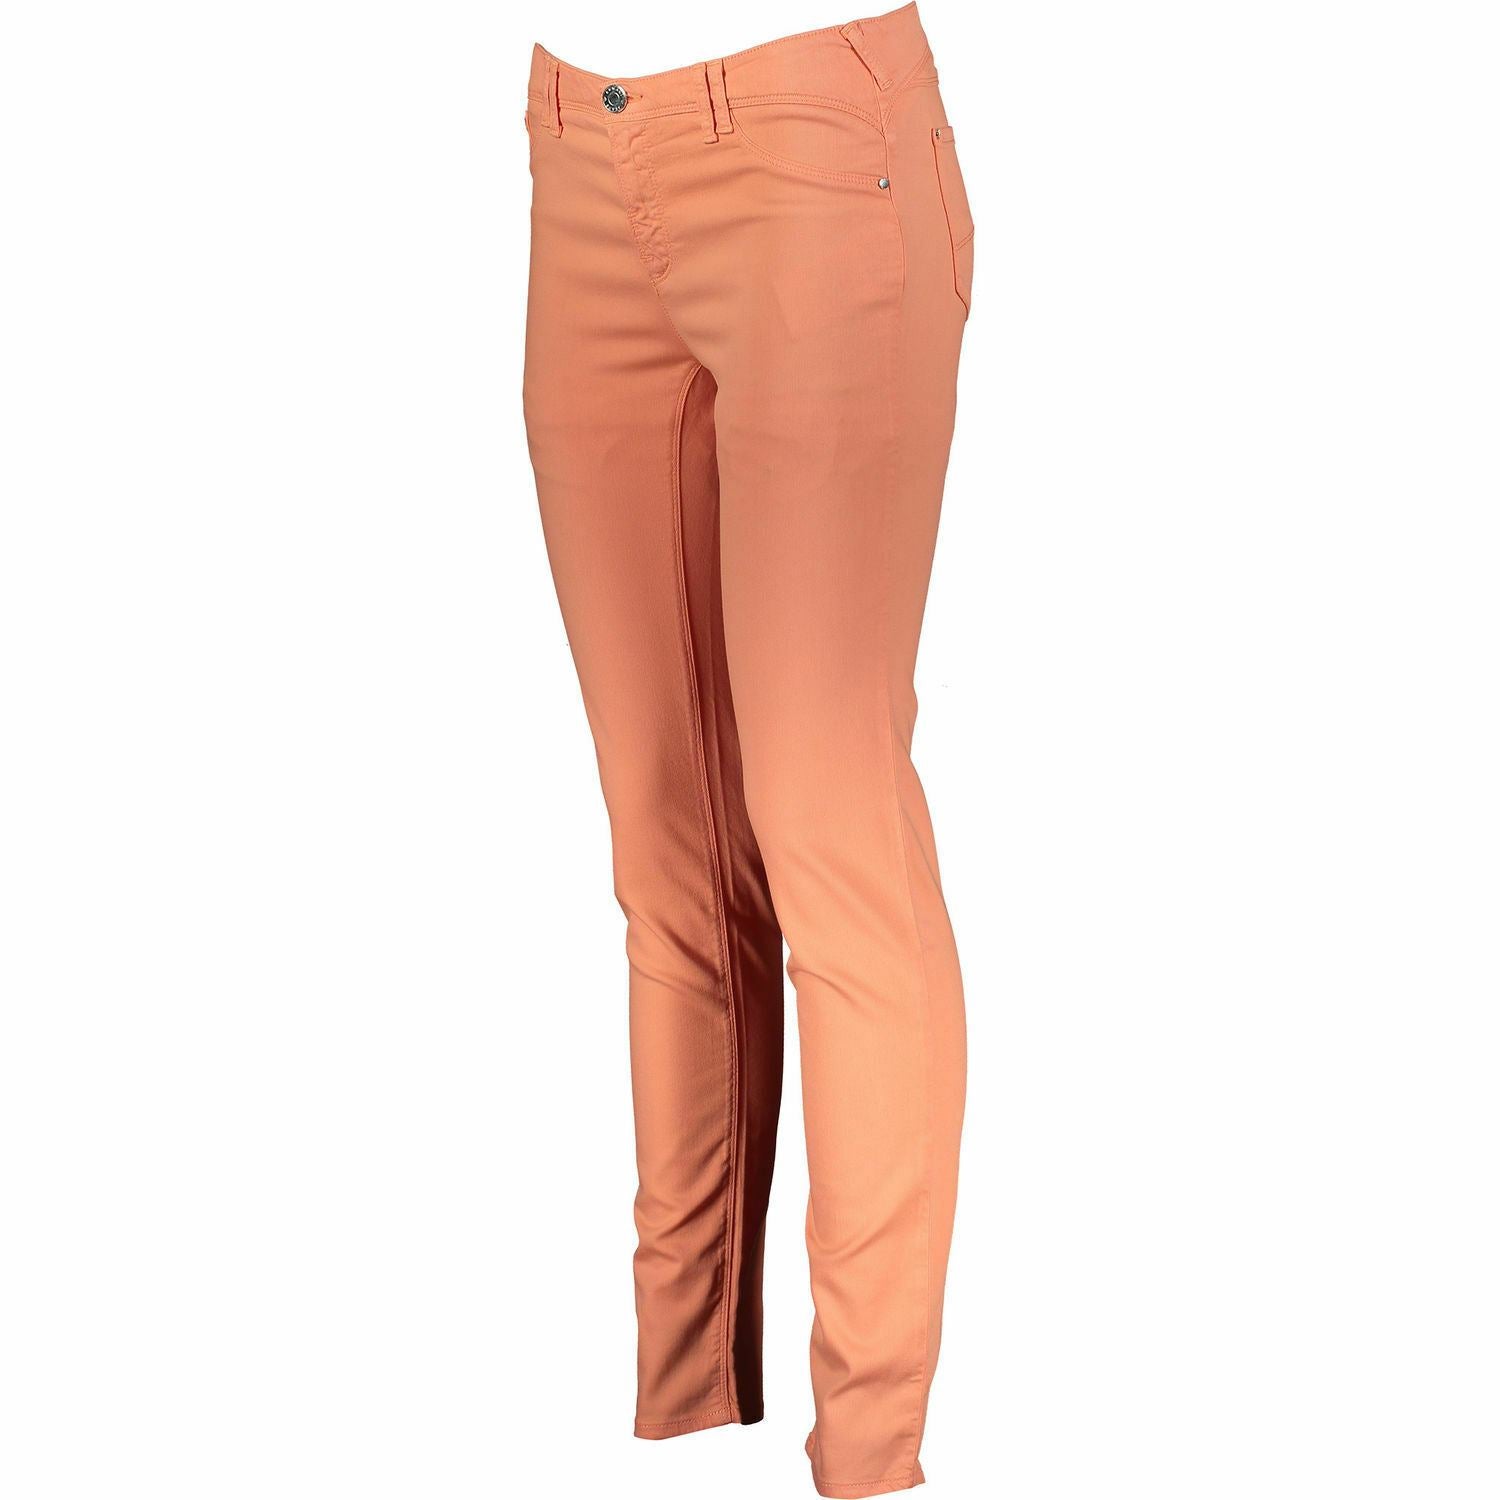 ARMANI JEANS Women's J28 Skinny Fit Twill Denim Jeans, Peach, sizes W26 W28 W30